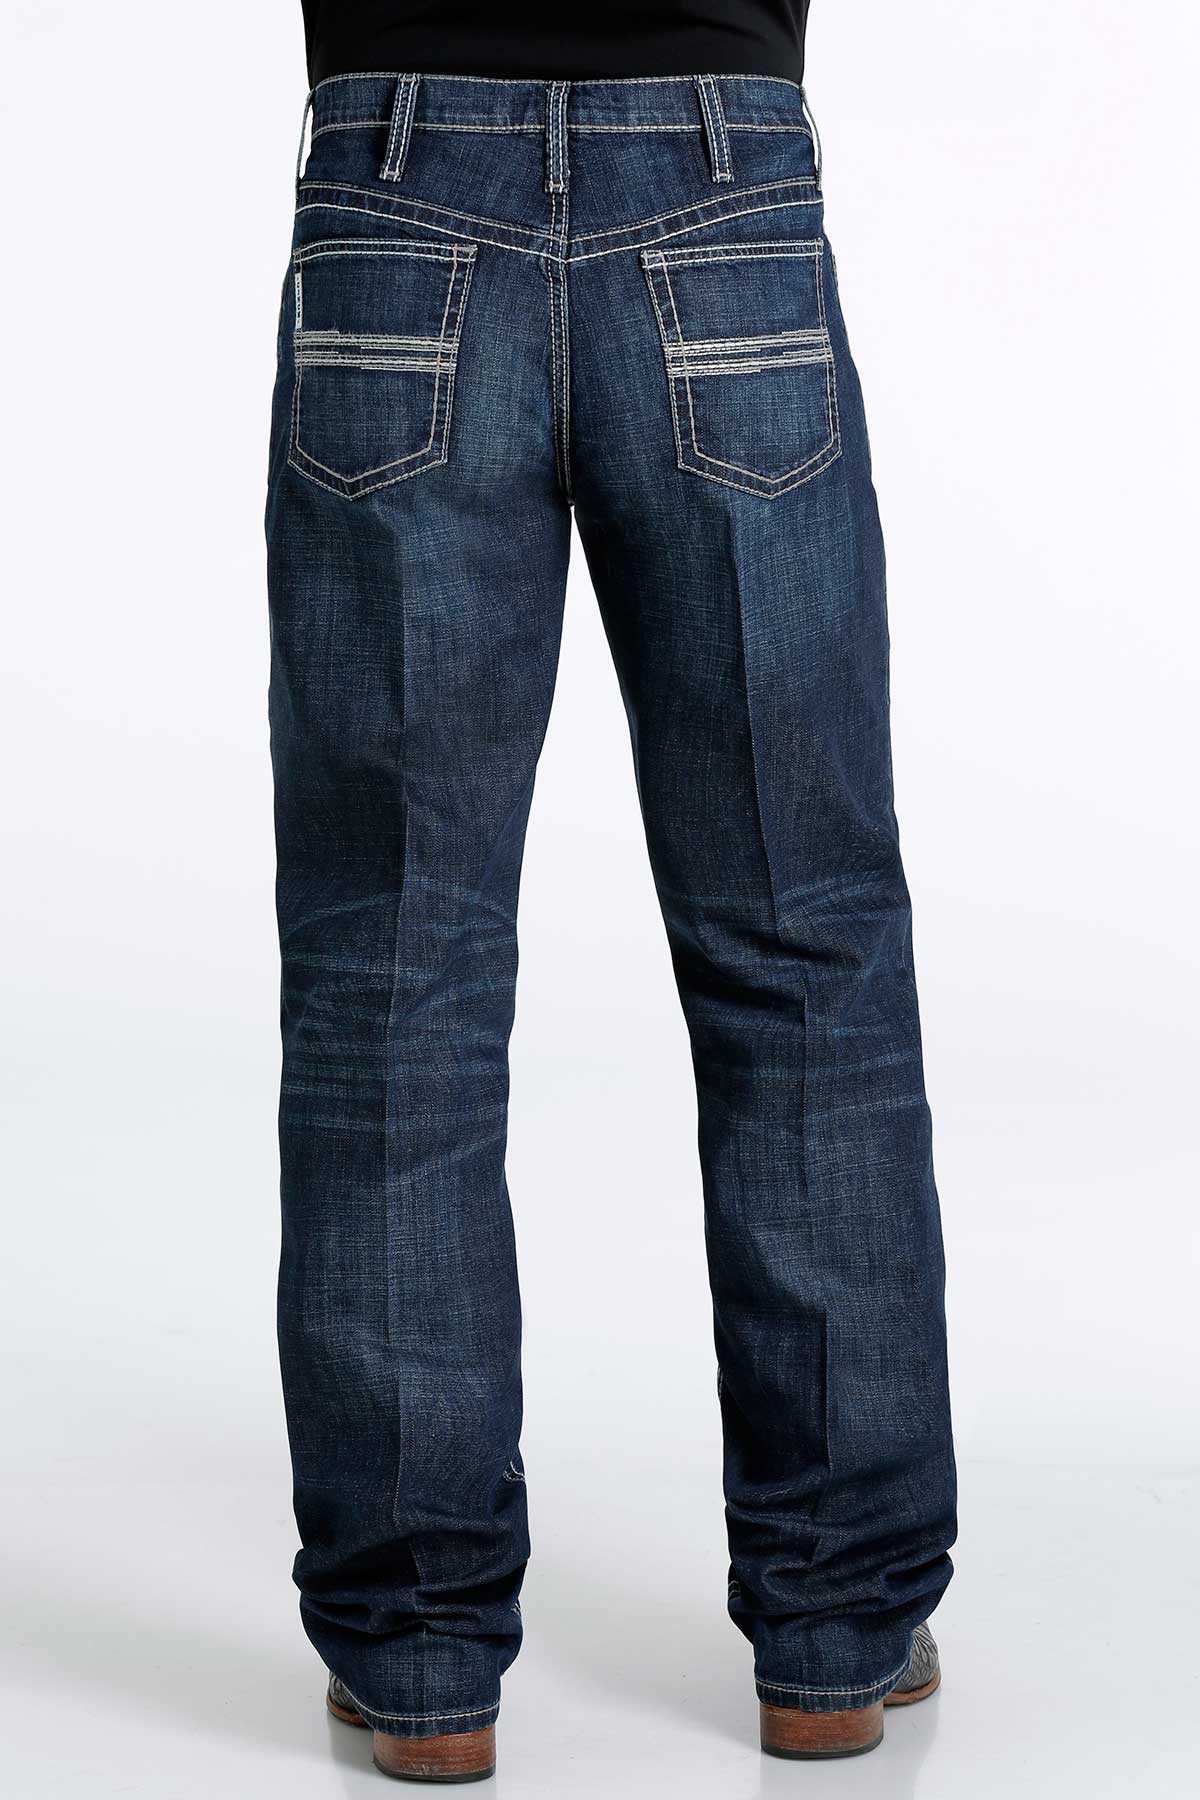 Cinch Men's White Label Relaxed Straight Jean in Dark Stonewash